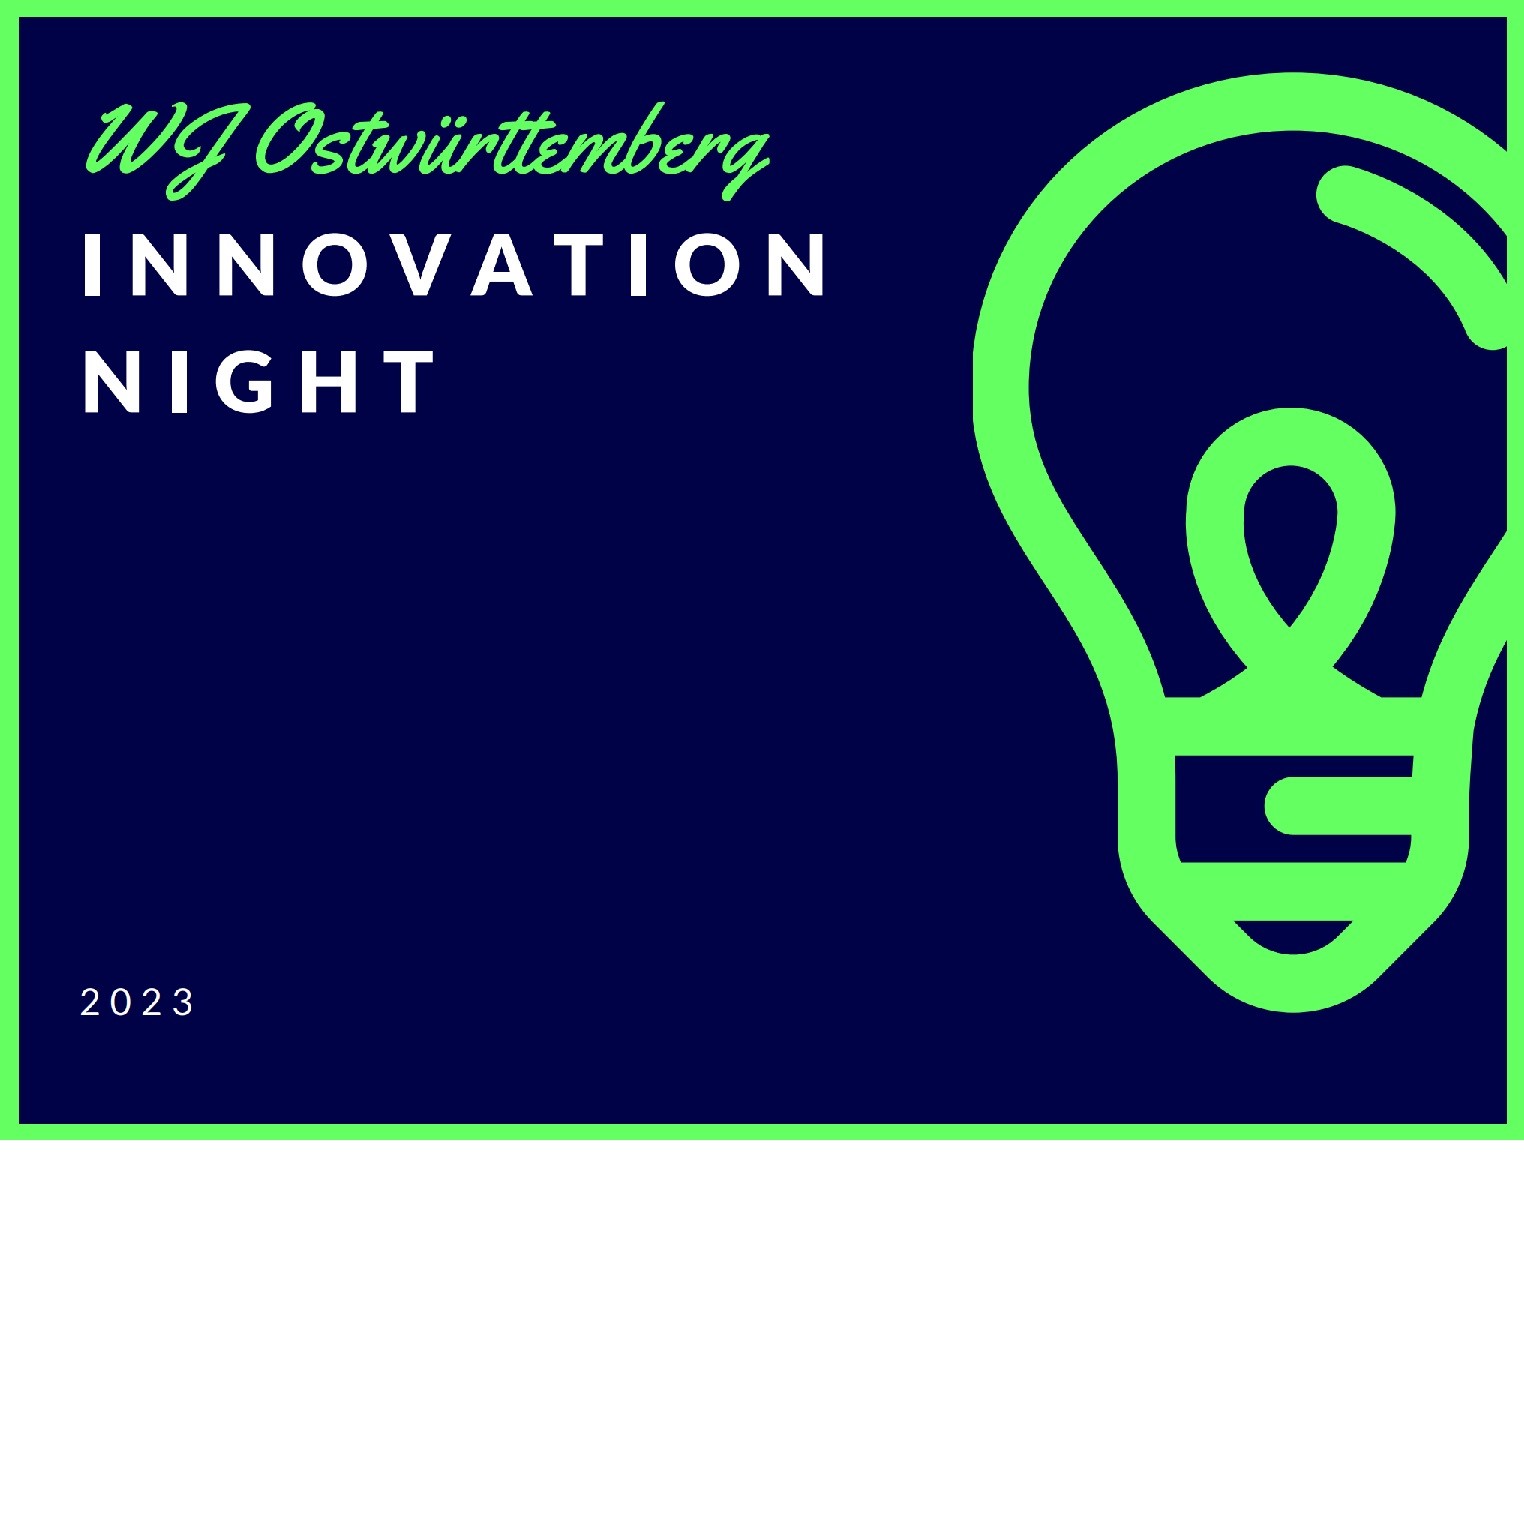 WJ_Innovation_Night.jpg